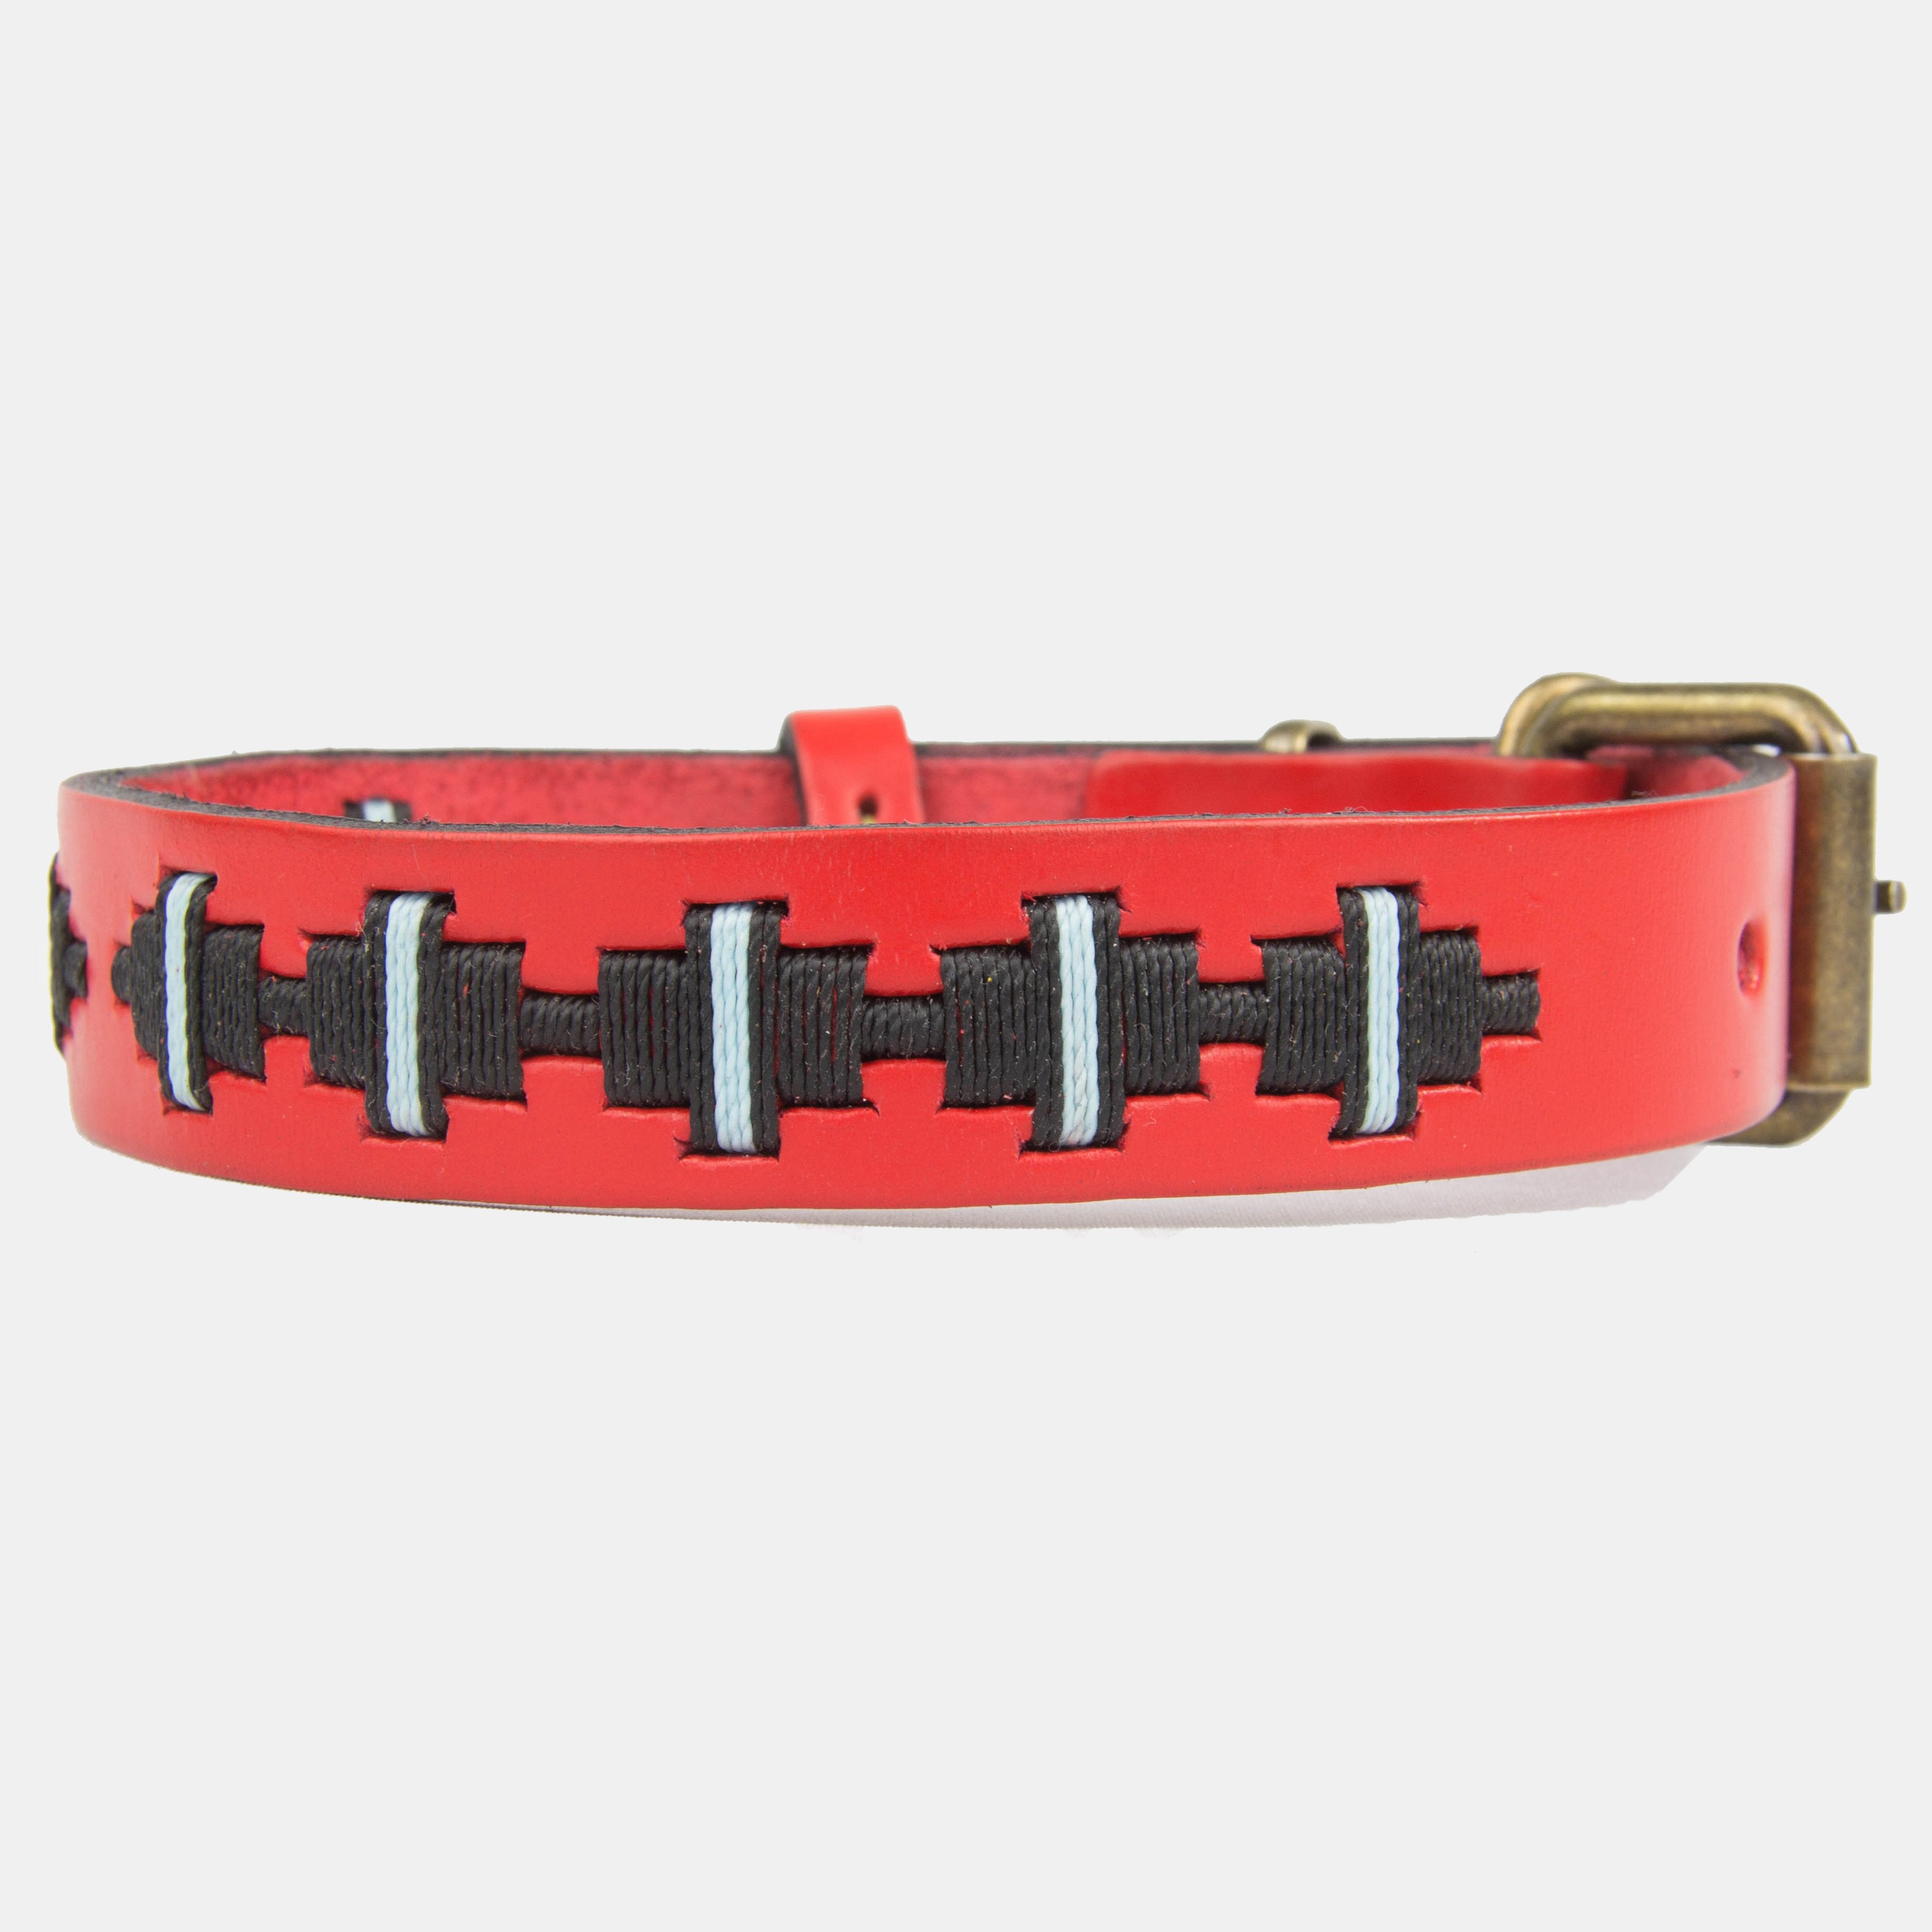 Collar para perros Mauloa, hecho en cuero, modelo Toby, color Rojo con bordado simple en colores